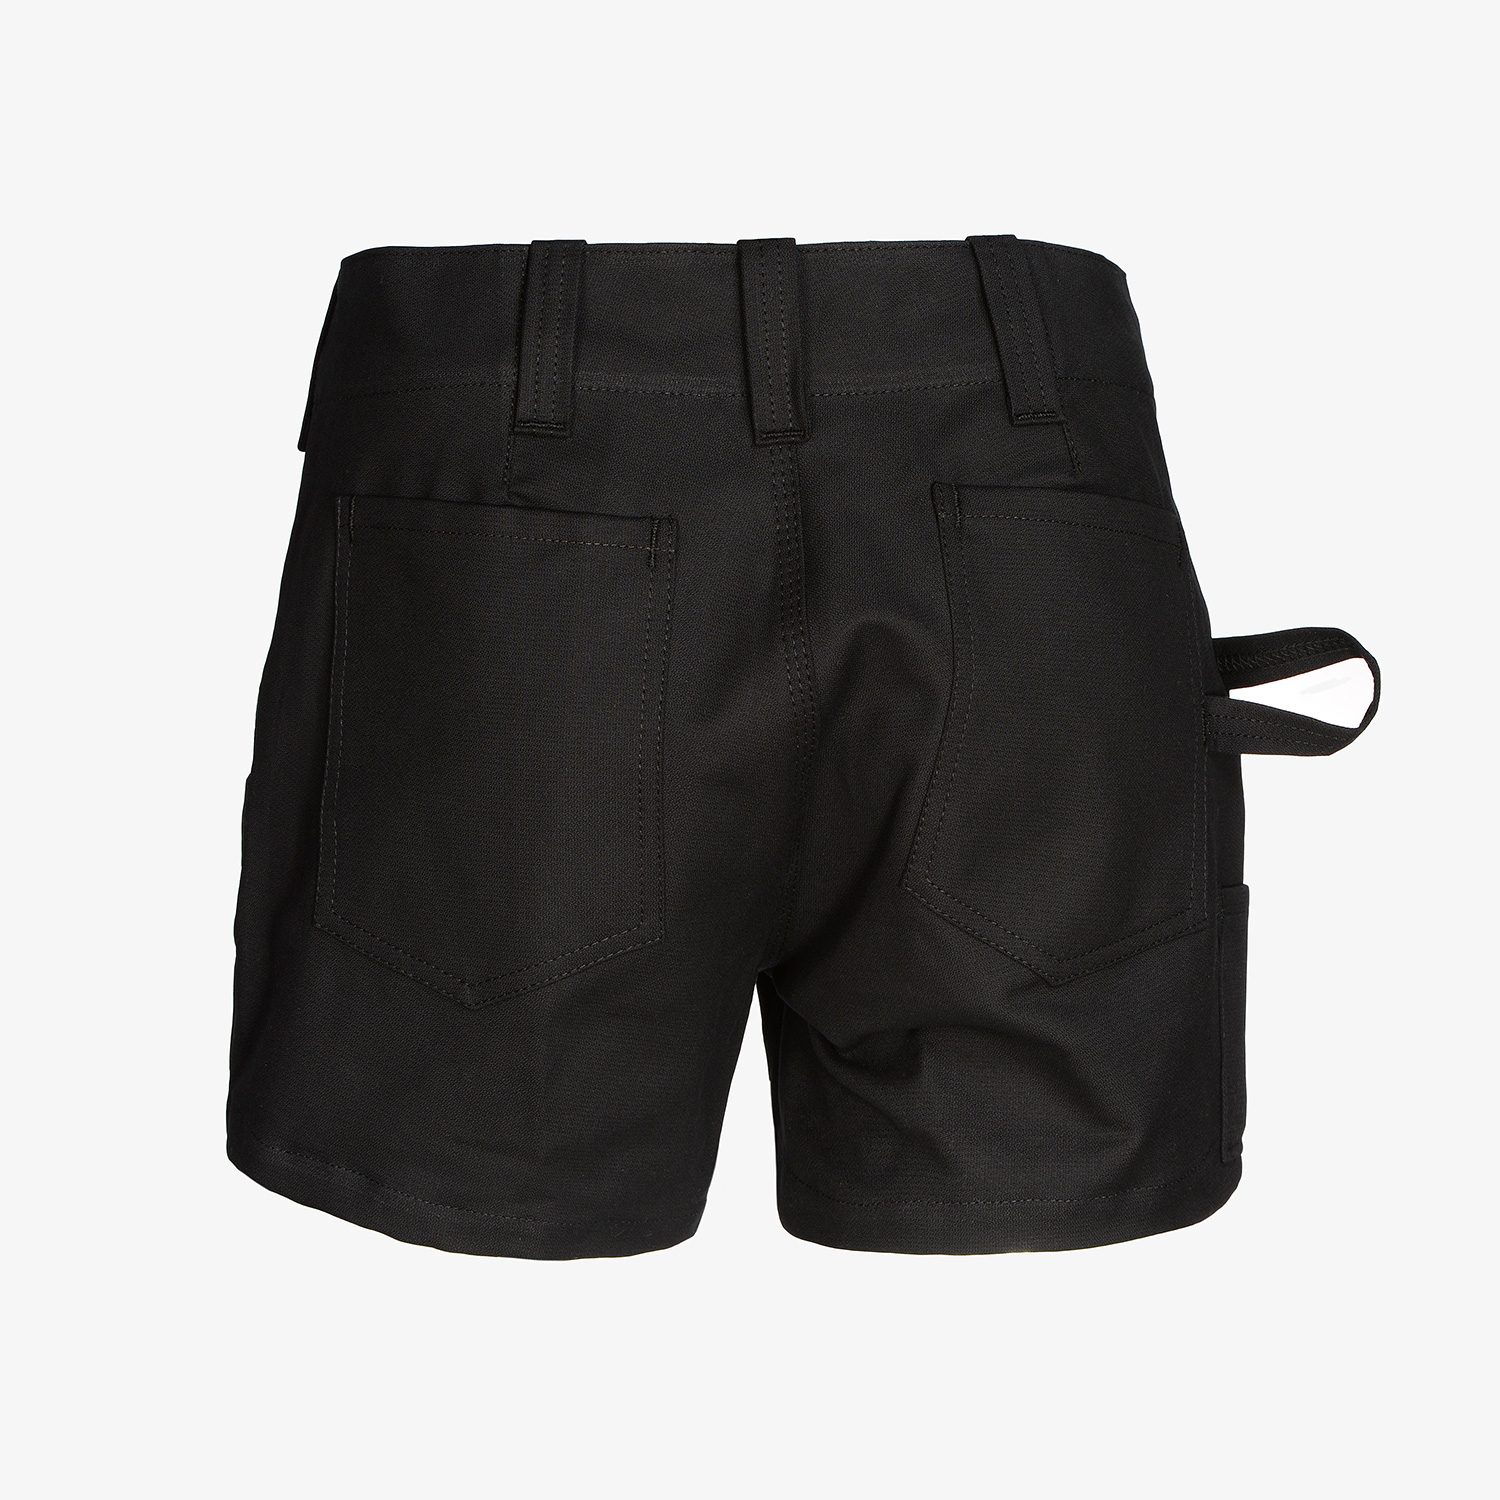 KRÄHE summer shorts